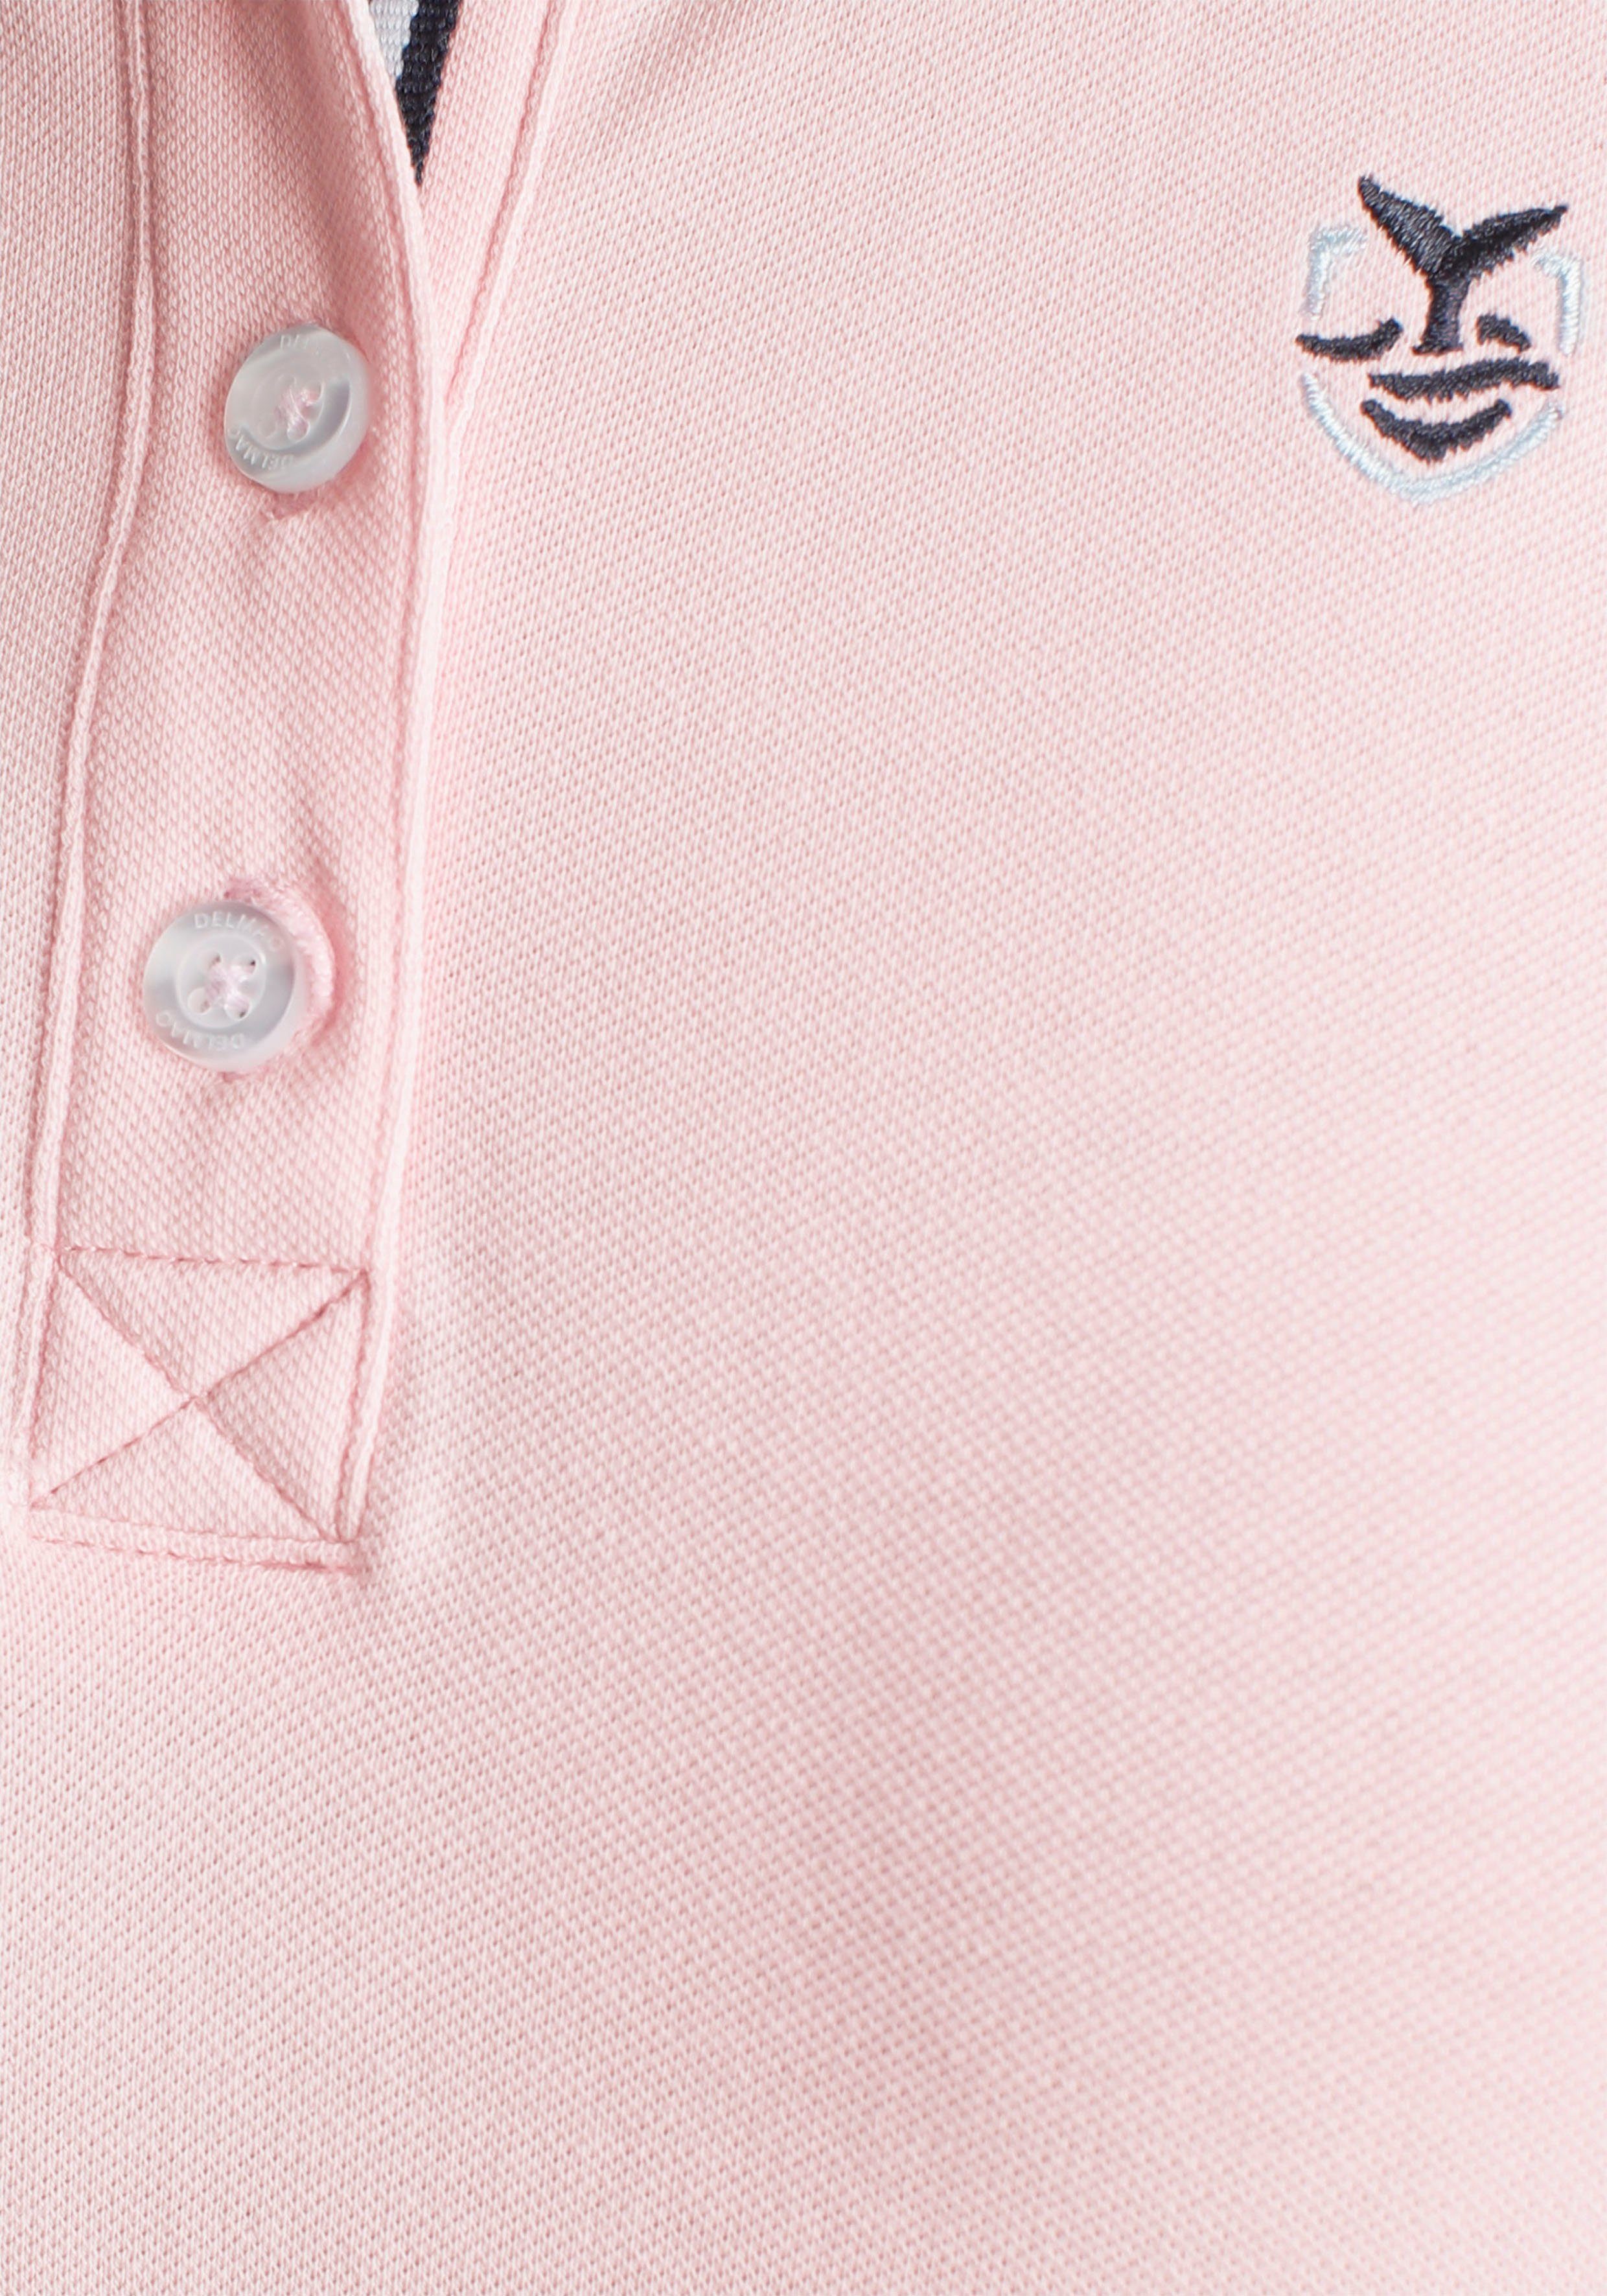 klassischer in - DELMAO in NEUE Poloshirt MARKE! verschiedenen rosa Farben Form